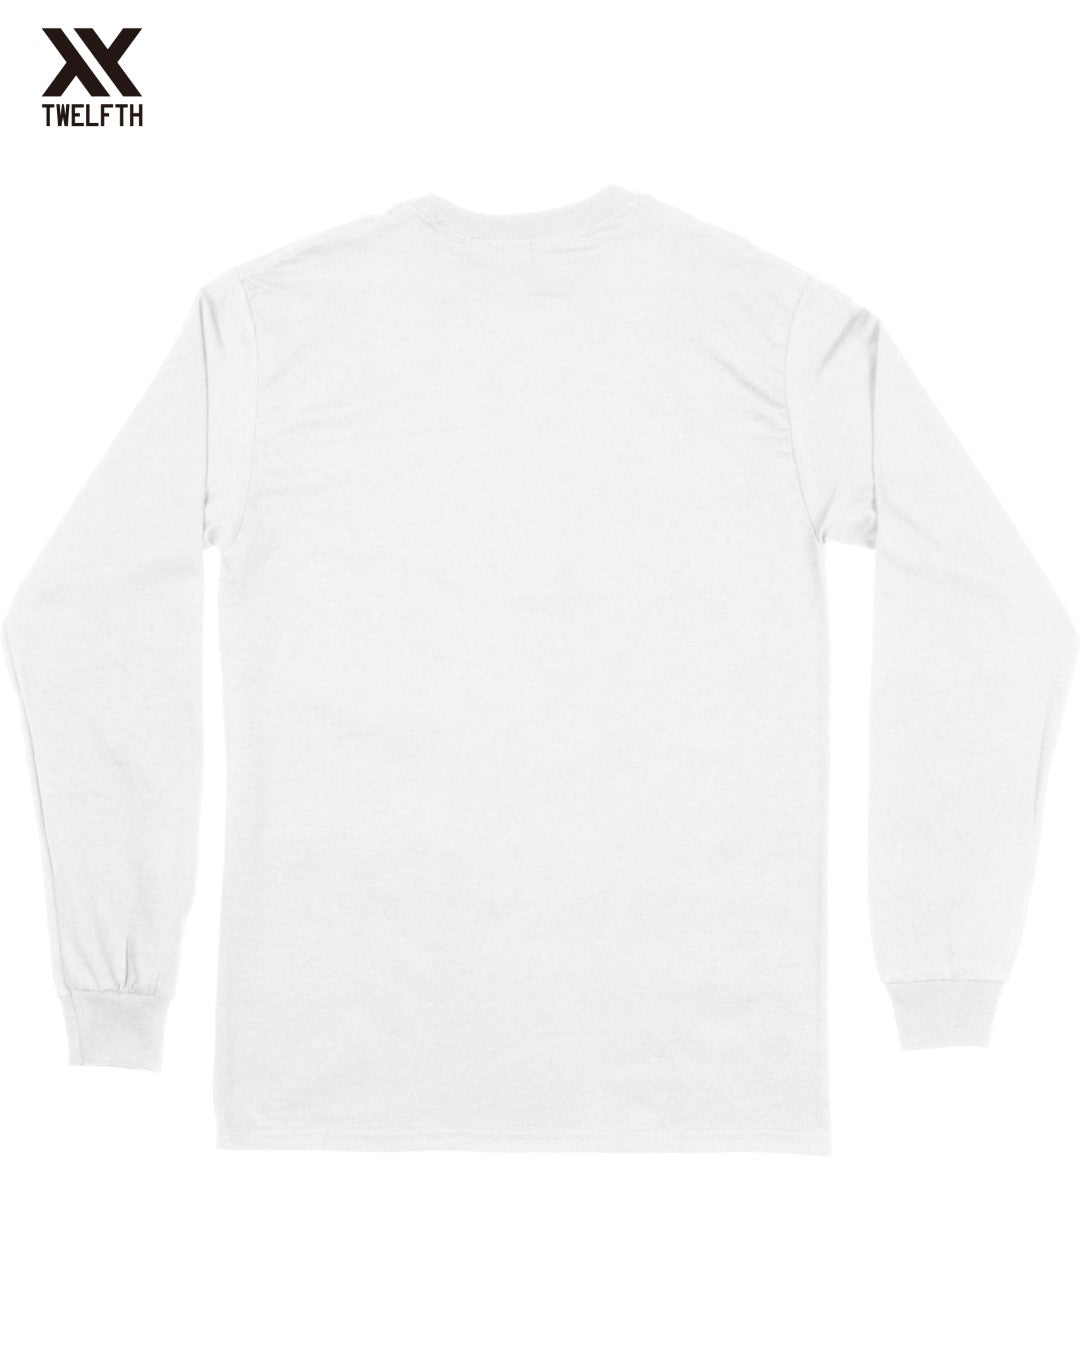 Marseille Crest T-Shirt - Mens - Long Sleeve